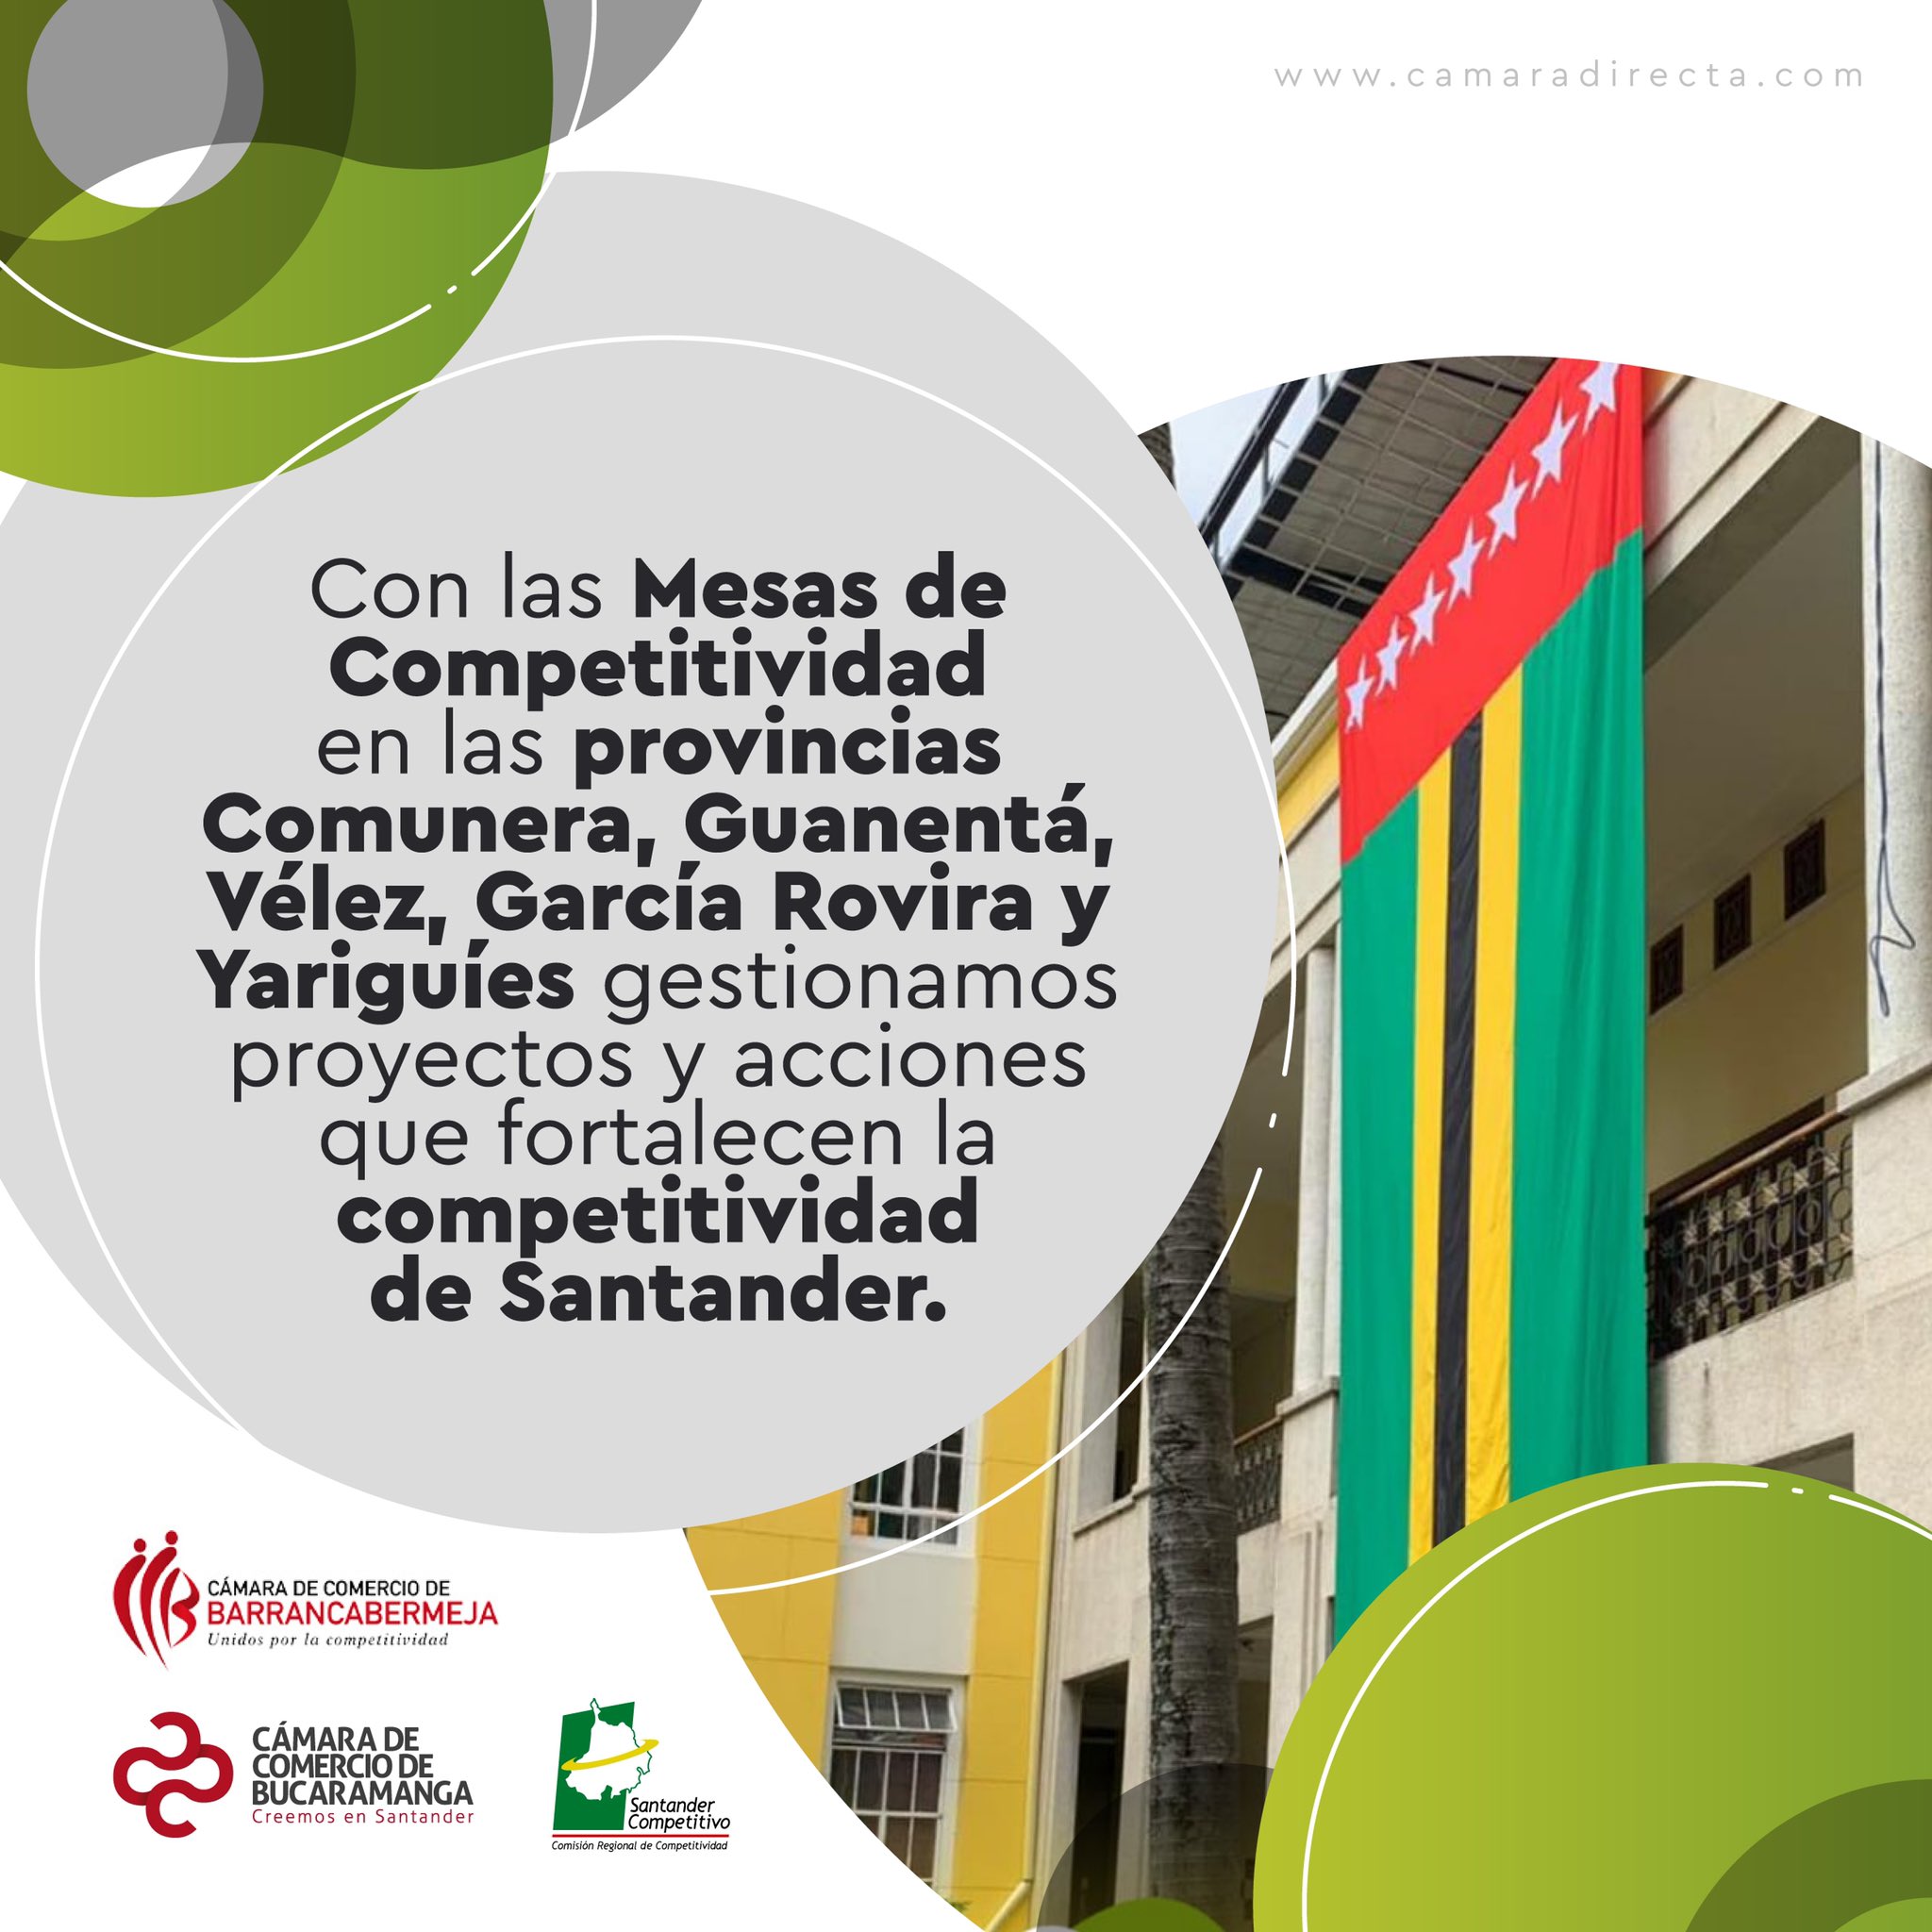 La Cámara de Comercio de Bucaramanga promueve la reactivación de las provincias con Mesas de Competitividad